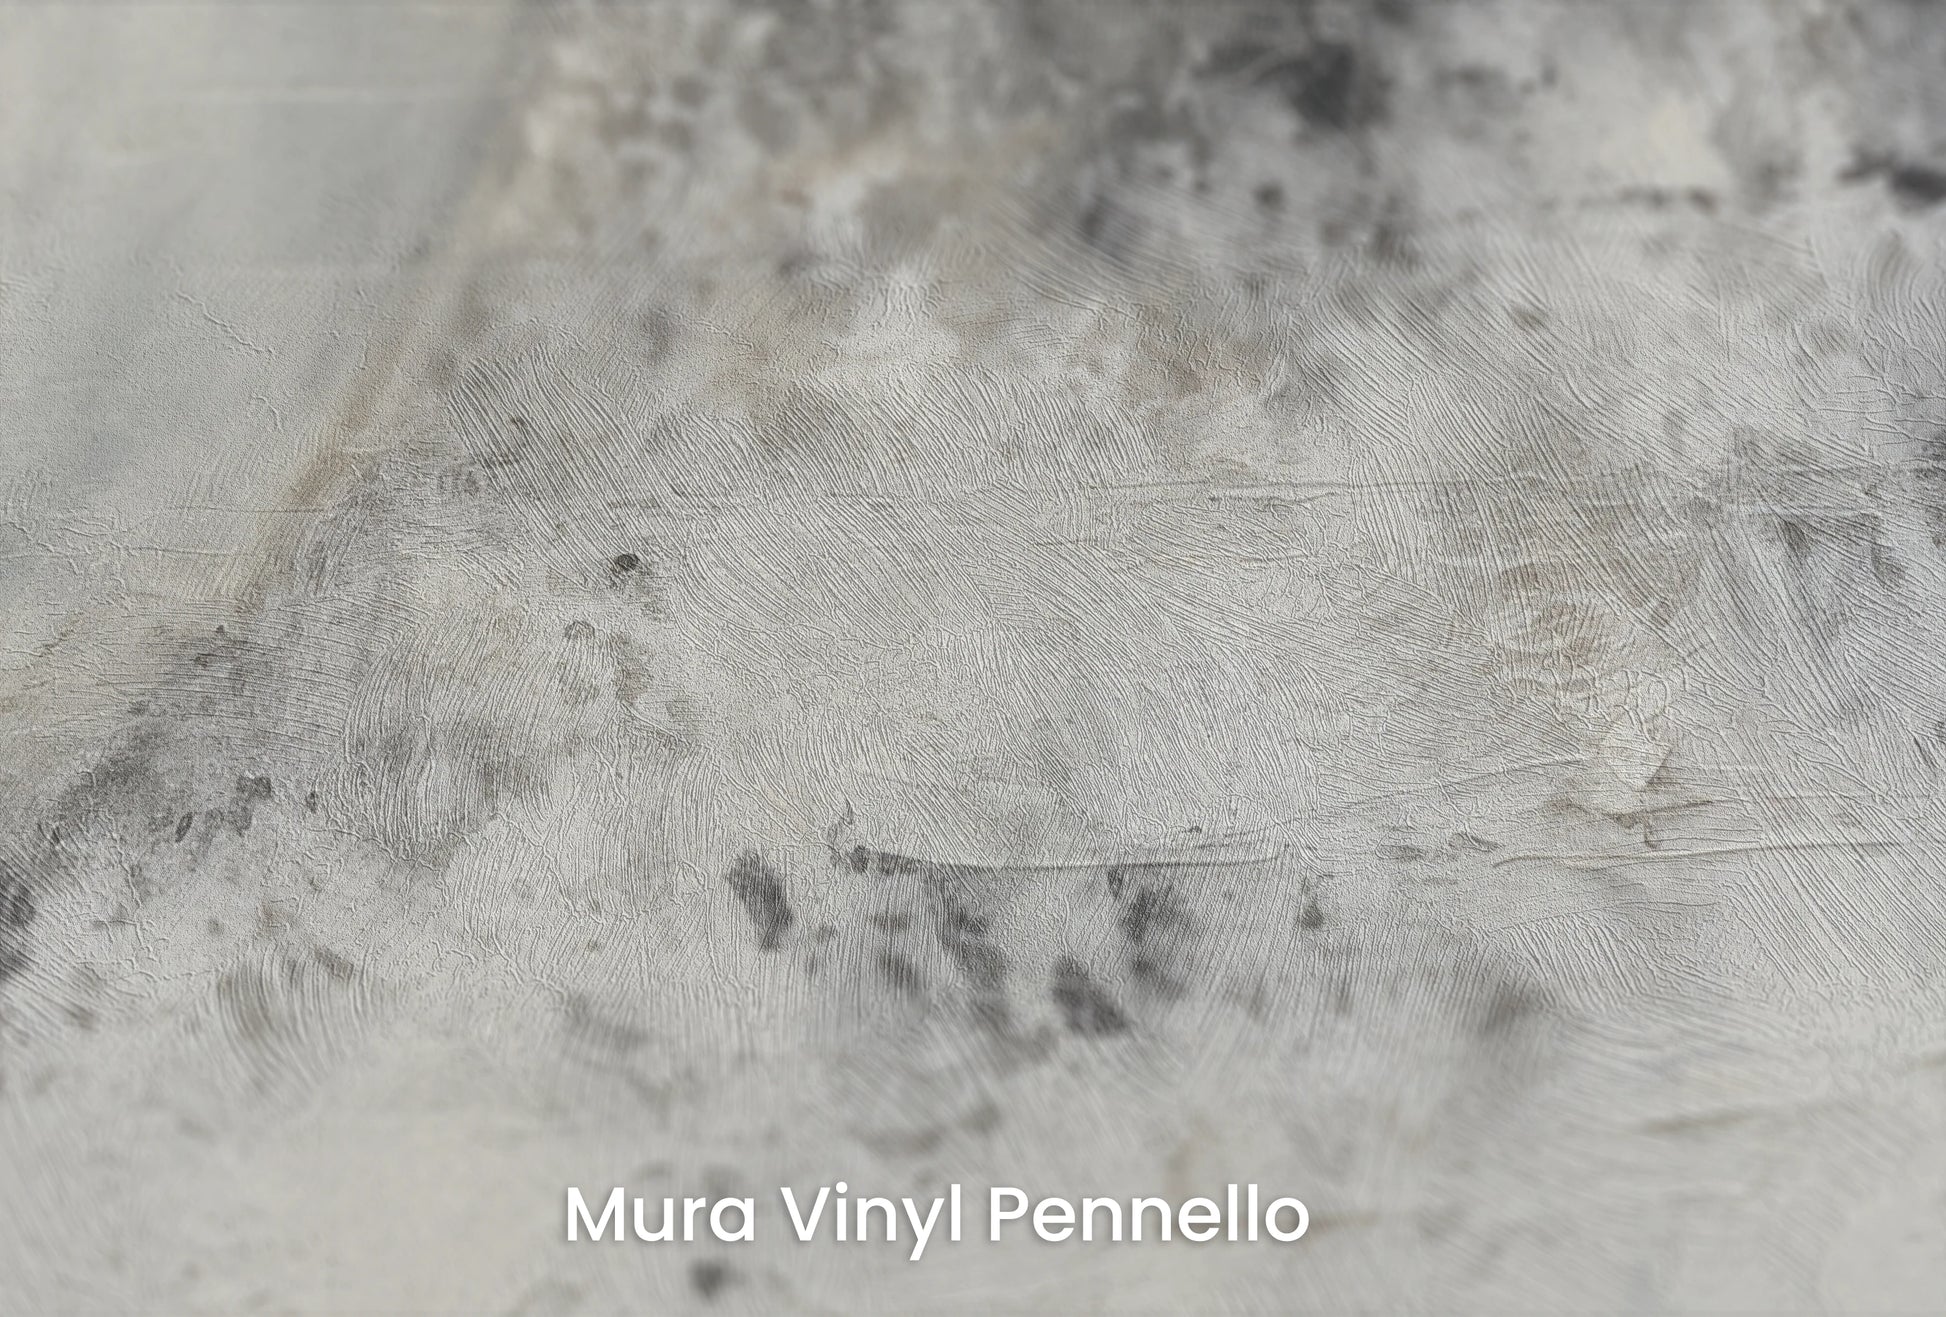 Zbliżenie na artystyczną fototapetę o nazwie Mercury's Shadow na podłożu Mura Vinyl Pennello - faktura pociągnięć pędzla malarskiego.